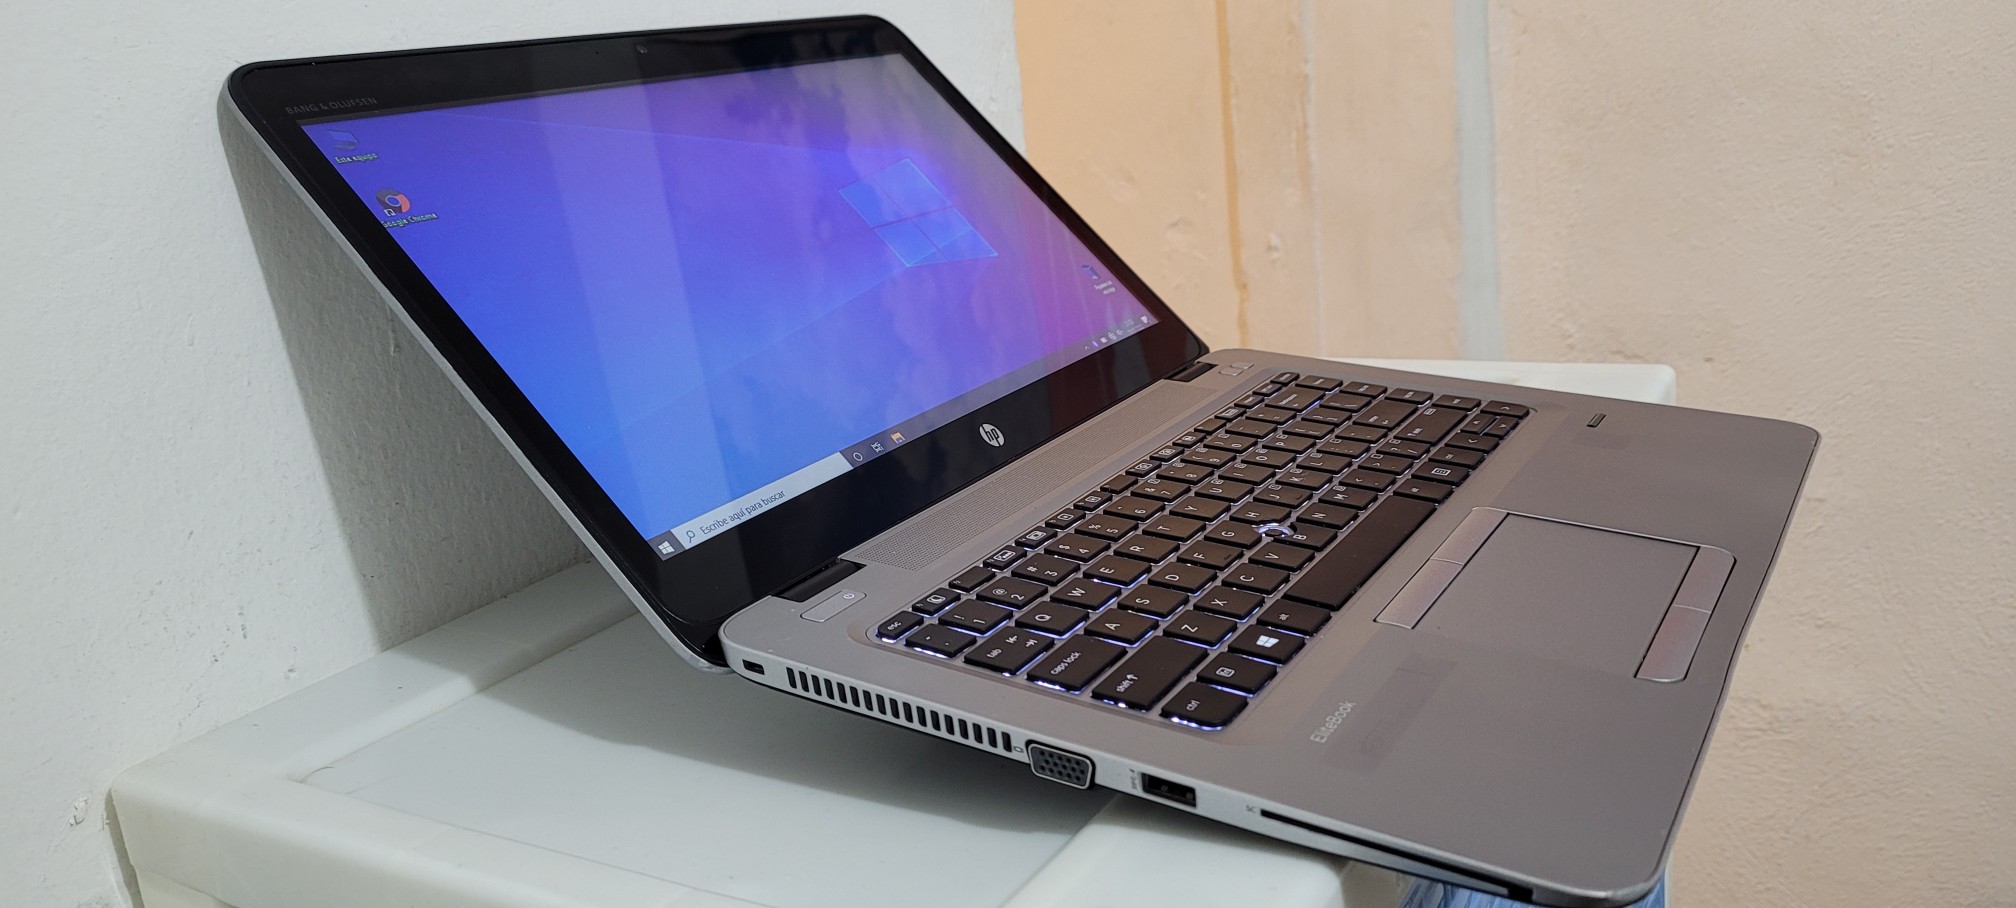 computadoras y laptops - hp Elitebook g2 14 Pulg Core i5 6ta Ram 8gb ddr4 Disco 500gb Full 1